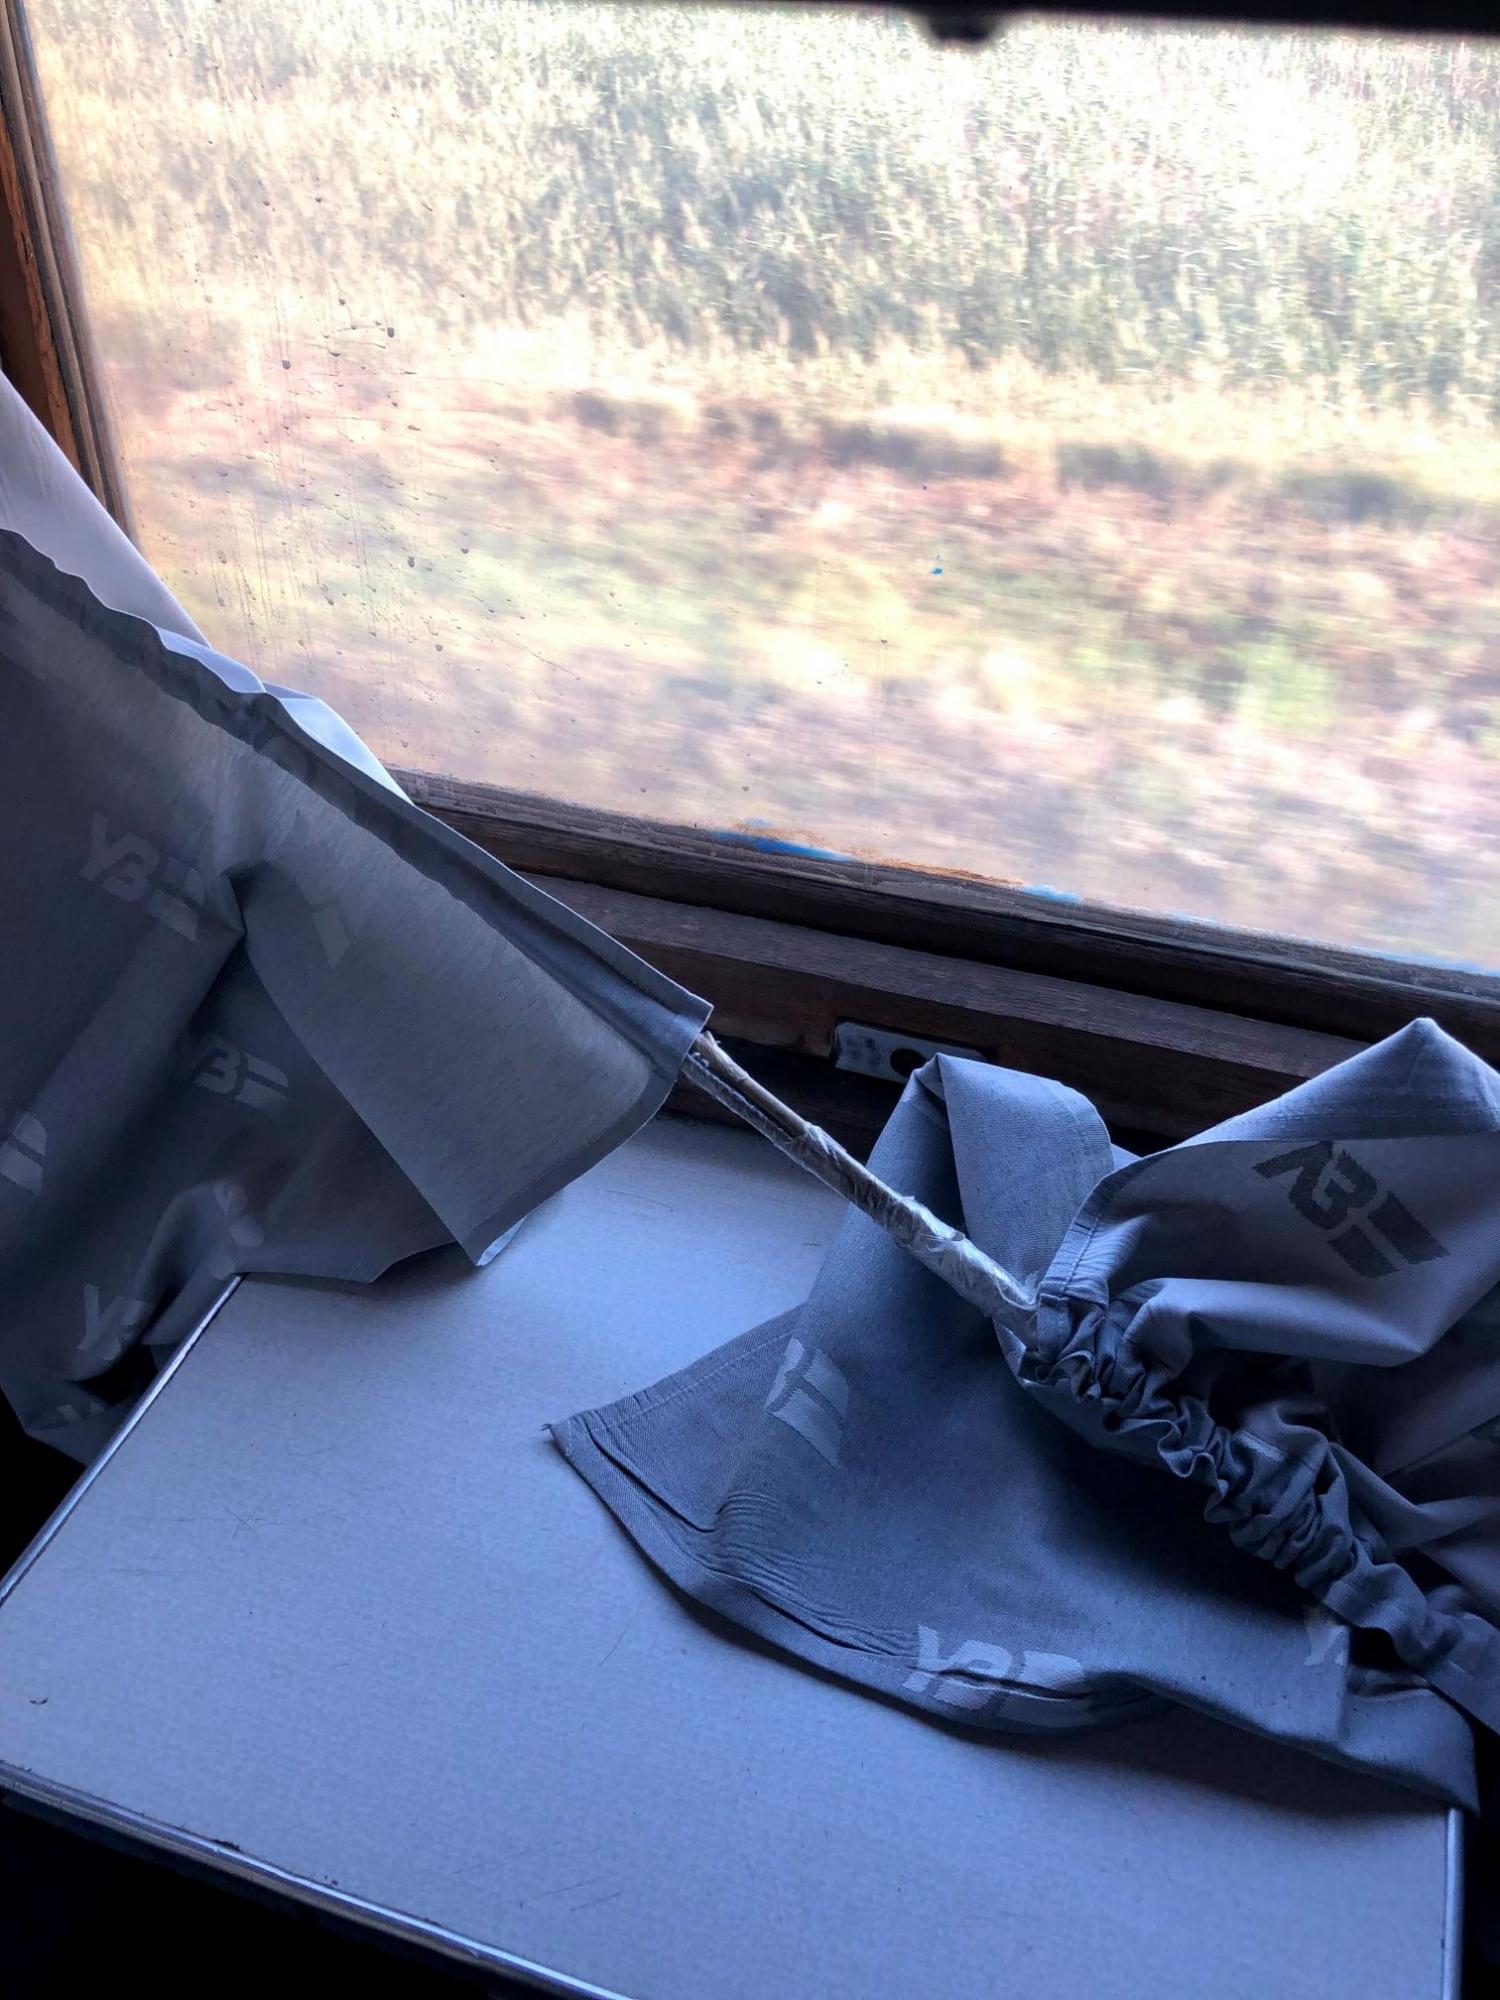 В Укрзализныце отремонтировали скандальный поезд, но пассажирам стало еще хуже